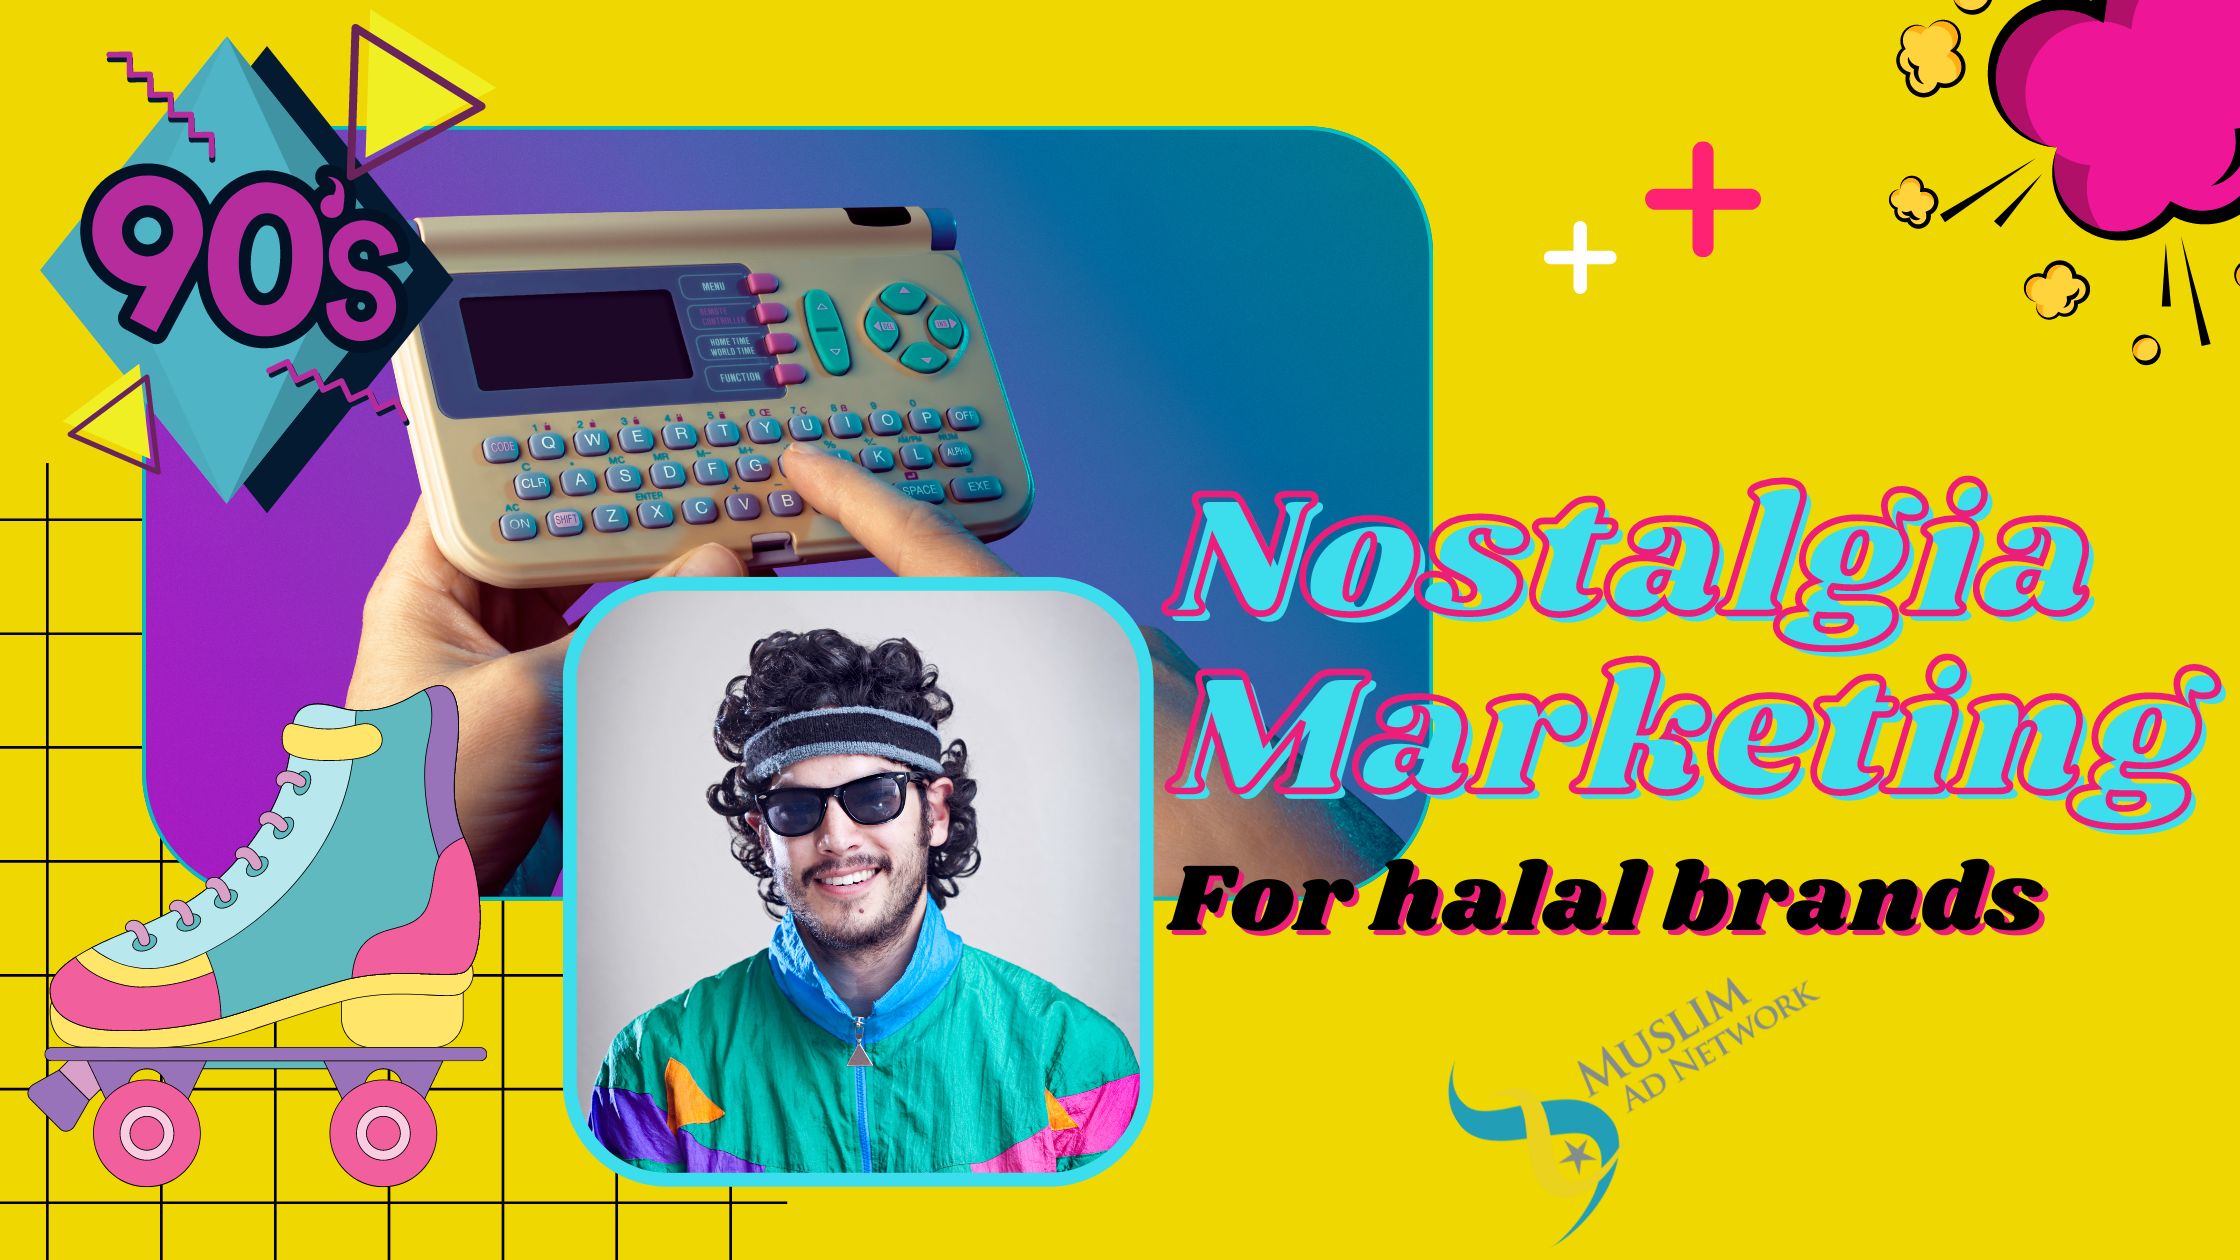 Nostalgia Marketing for Halal Brands